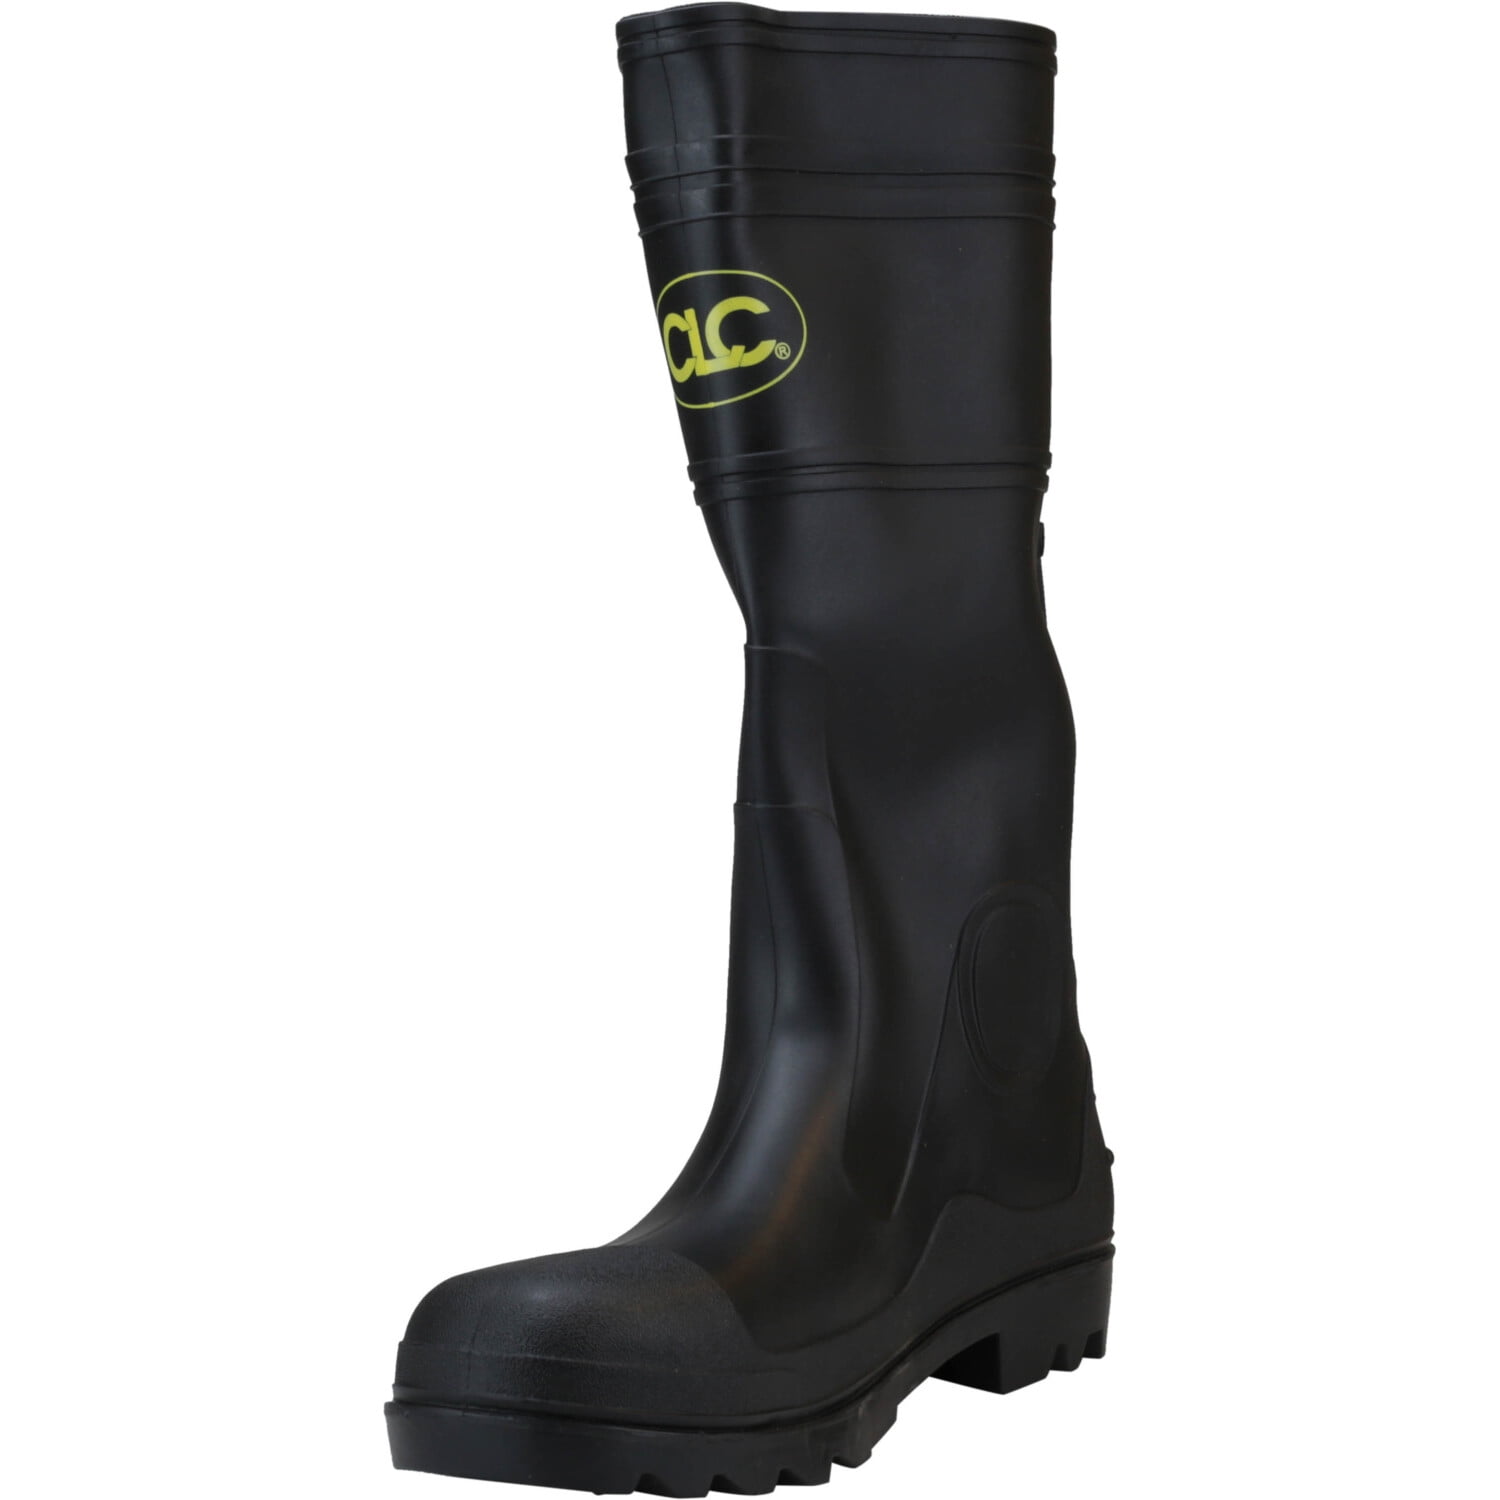 CLC - Clc Men's Pvc Rain Boot Black Mid-Calf Rubber - 11M - Walmart.com ...